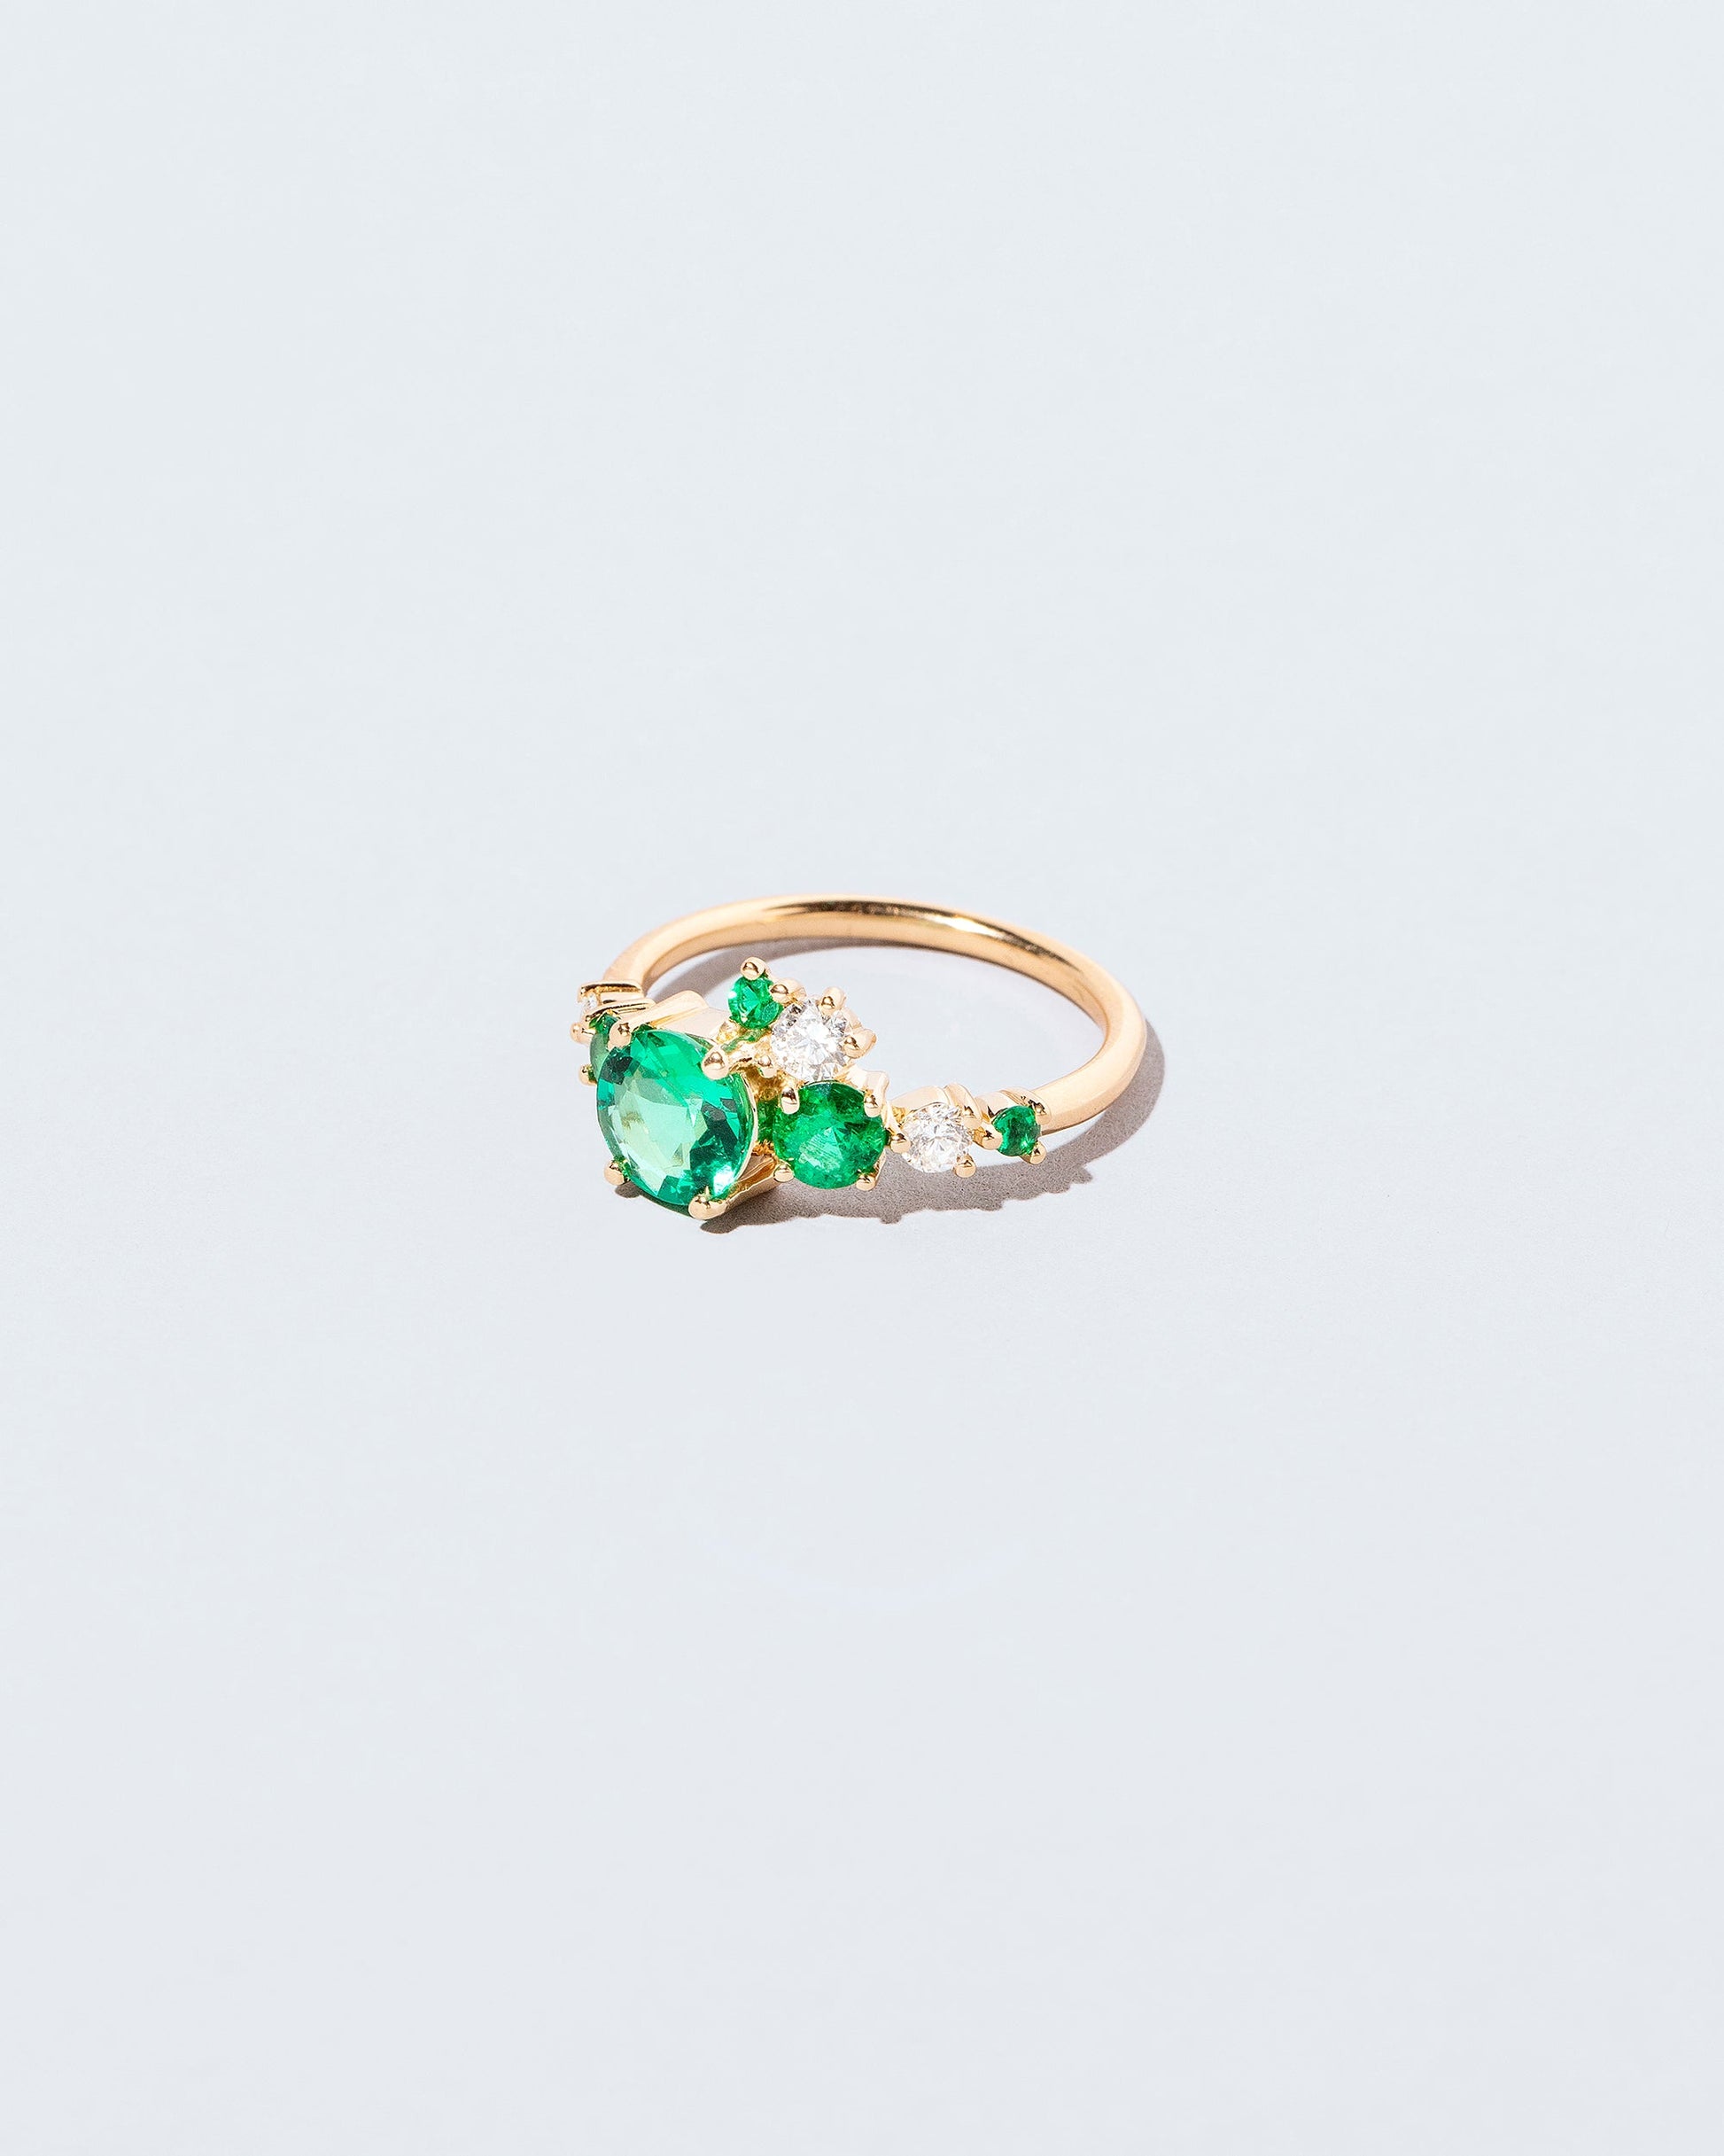  Luna Ring - Emerald on light color background.